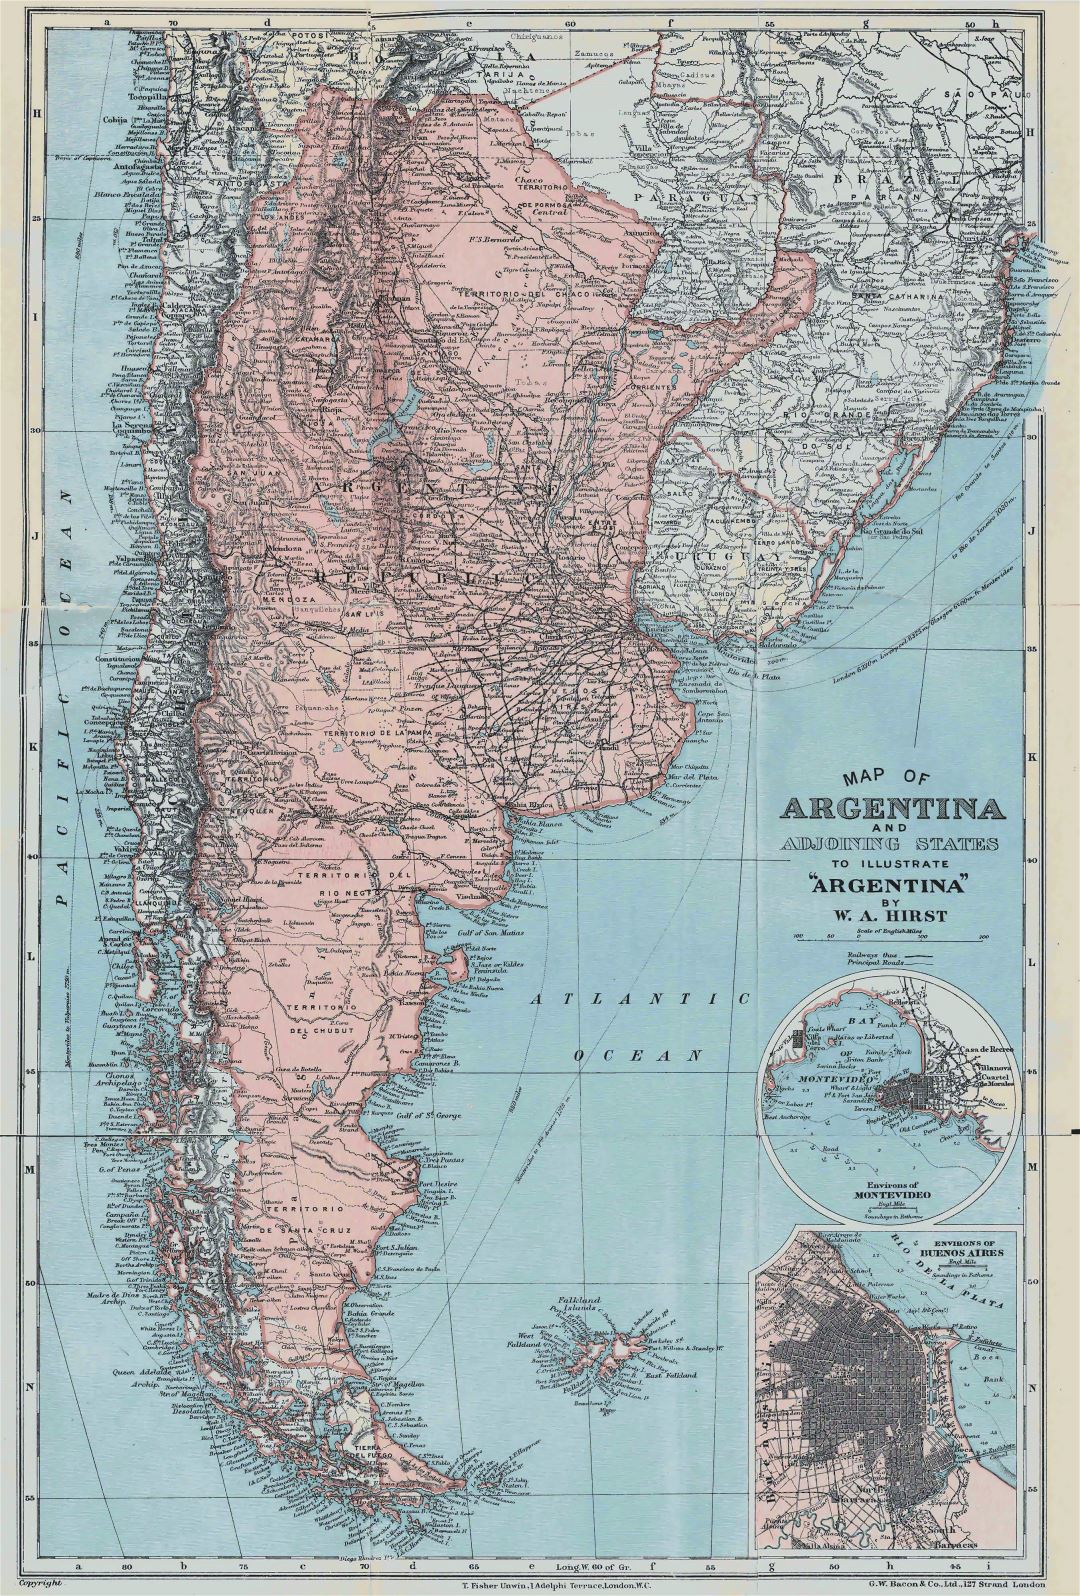 Grande detallado mapa antiguo de Argentina - 1900